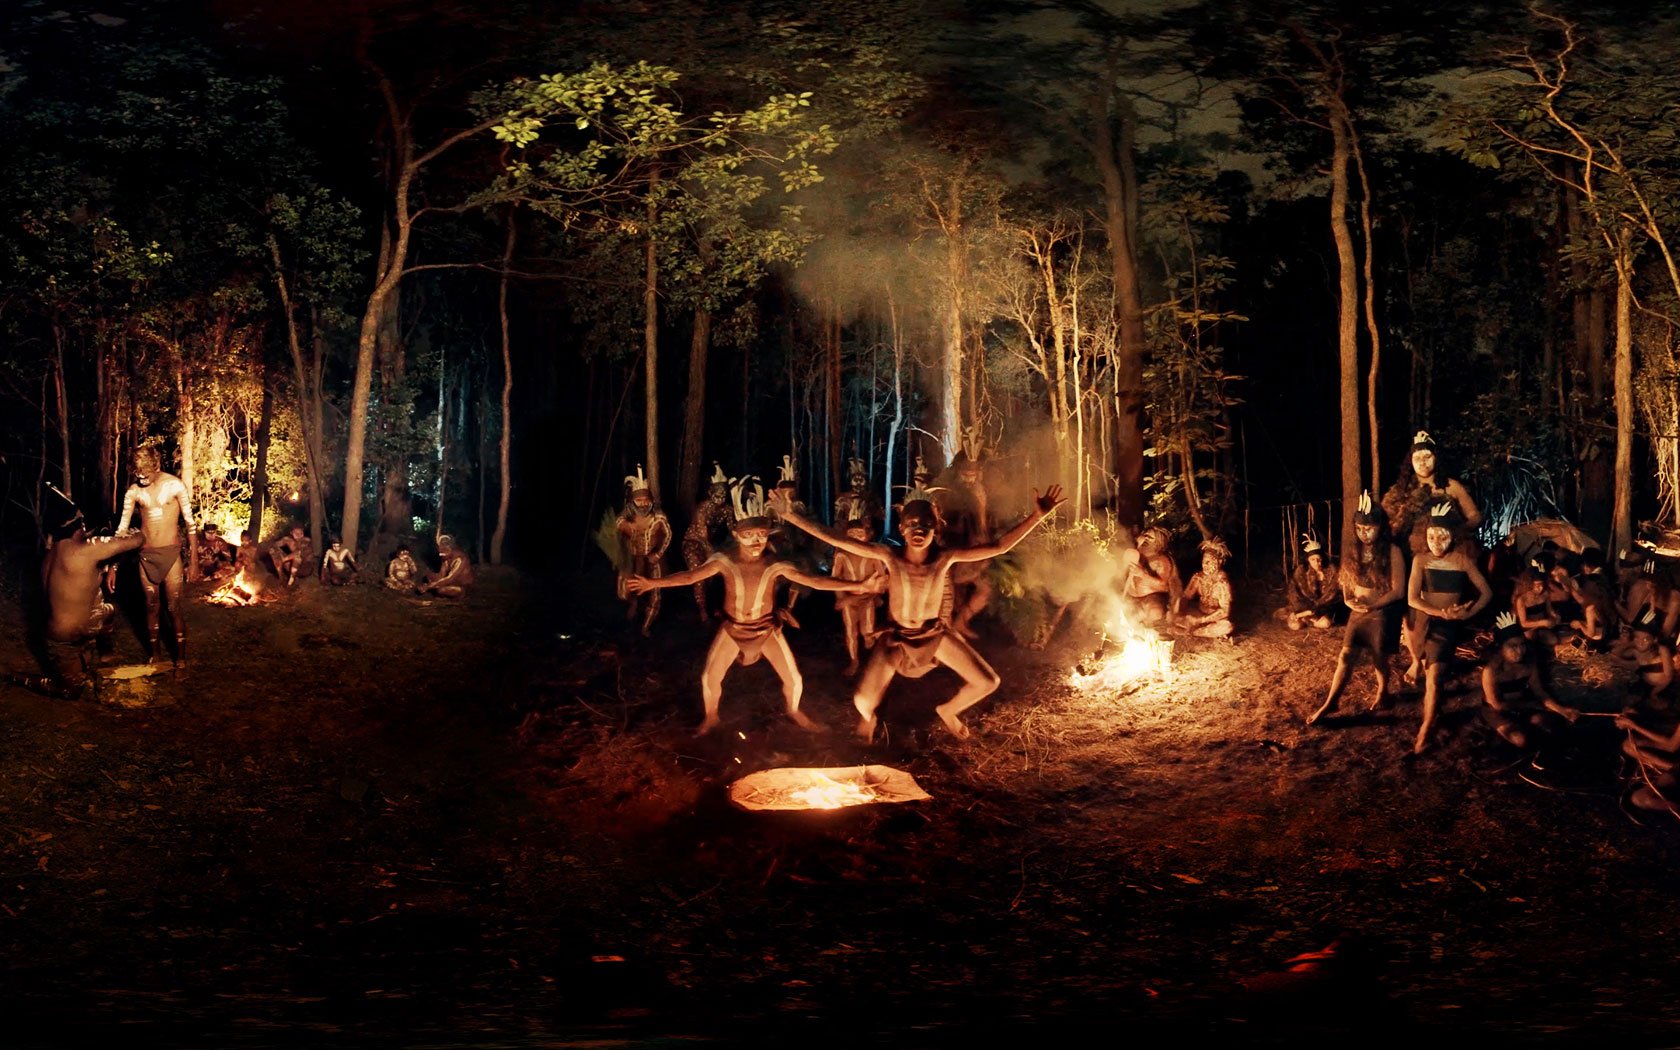 Первобытные традиции. Аборигены Австралии обряд инициаций. Обряды первобытных людей. Ритуальные танцы вокруг костра. Ритуалы древних людей.